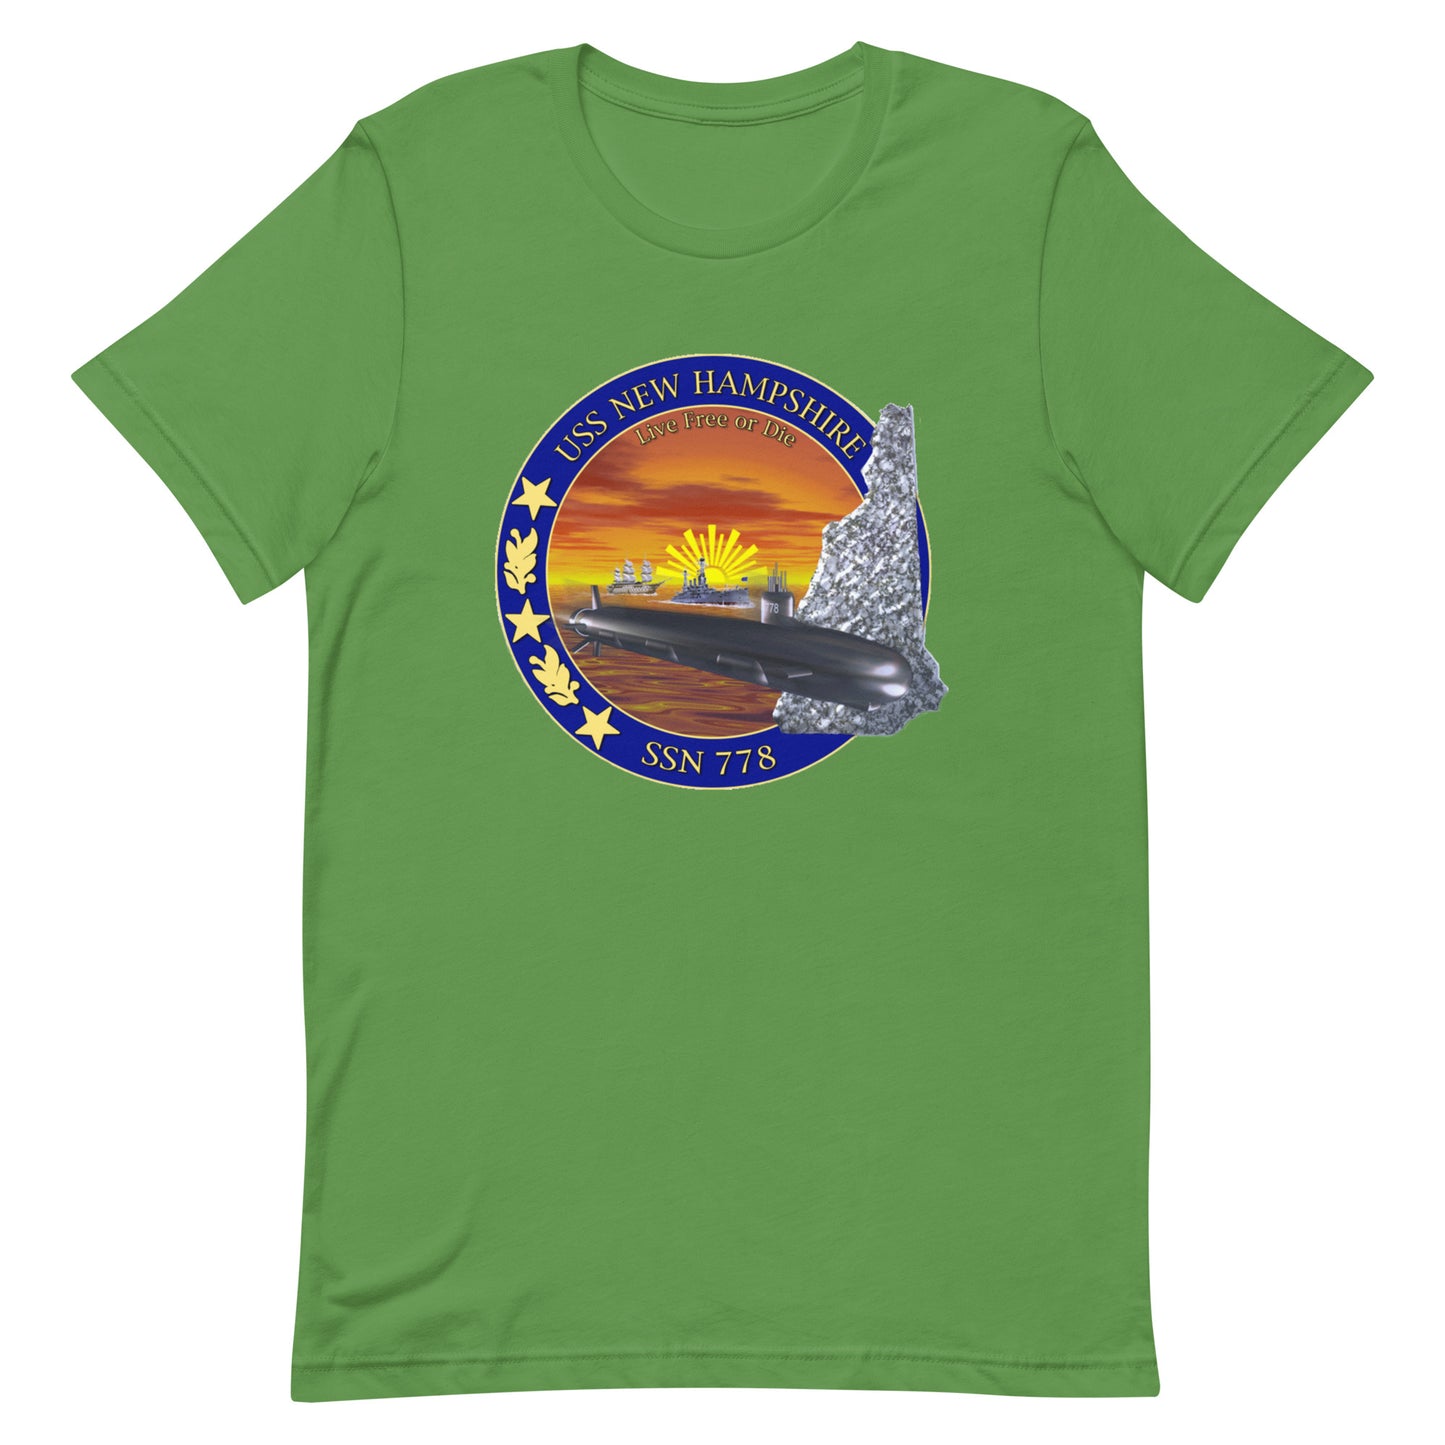 U.S.S. New Hampshire NAVY Tribute Series T-Shirt